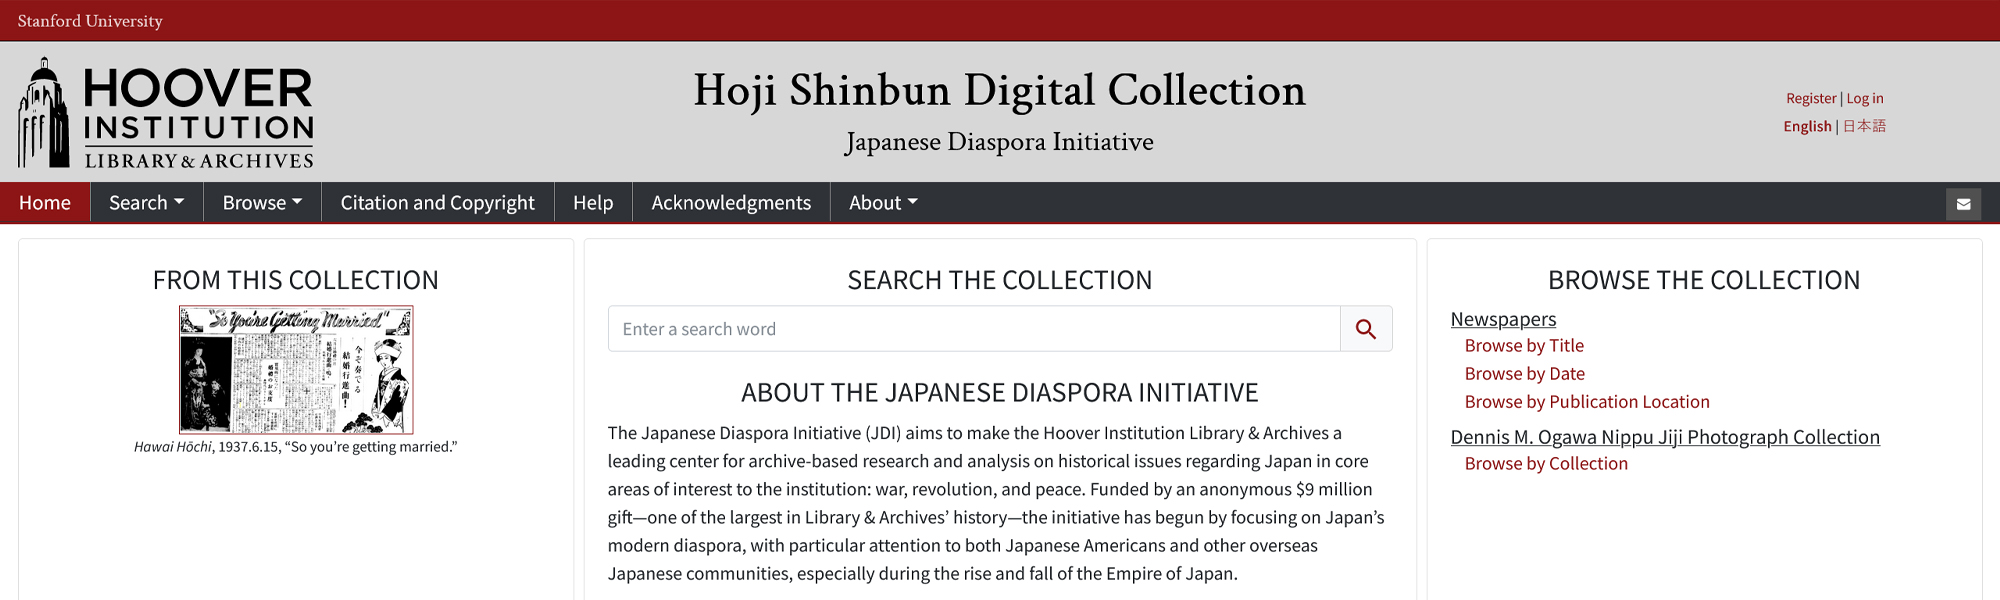 Hoji Shinbun homepage